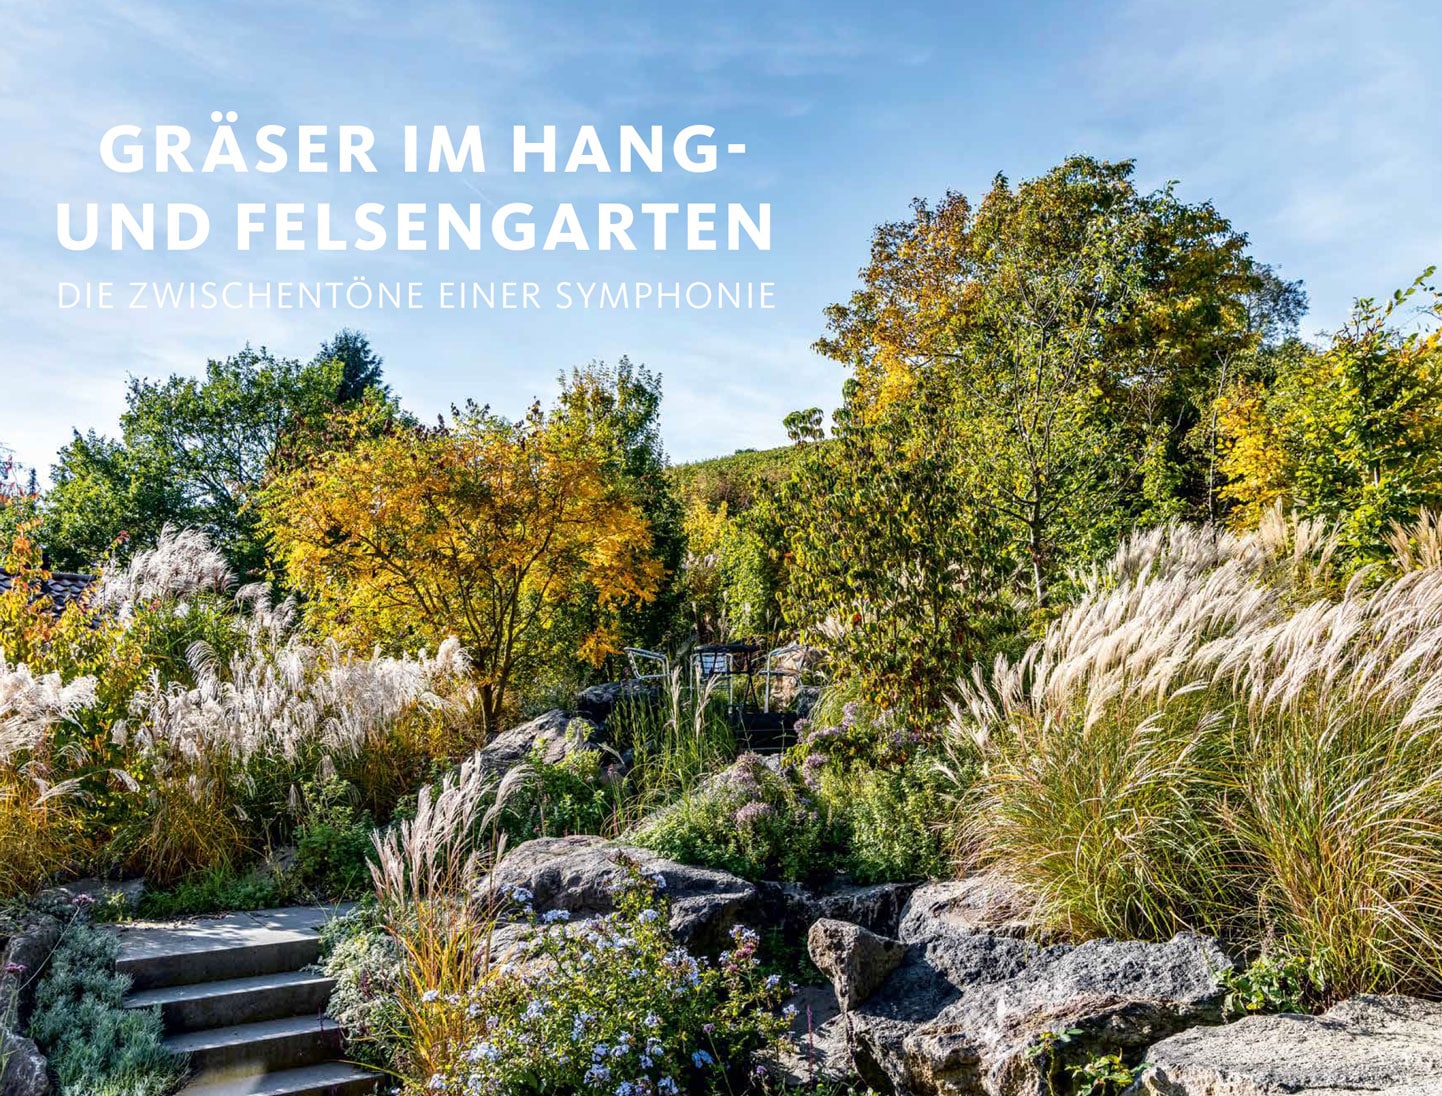 Titelbild des Interviews in "Garten Design Inspiration" mit Peter Berg